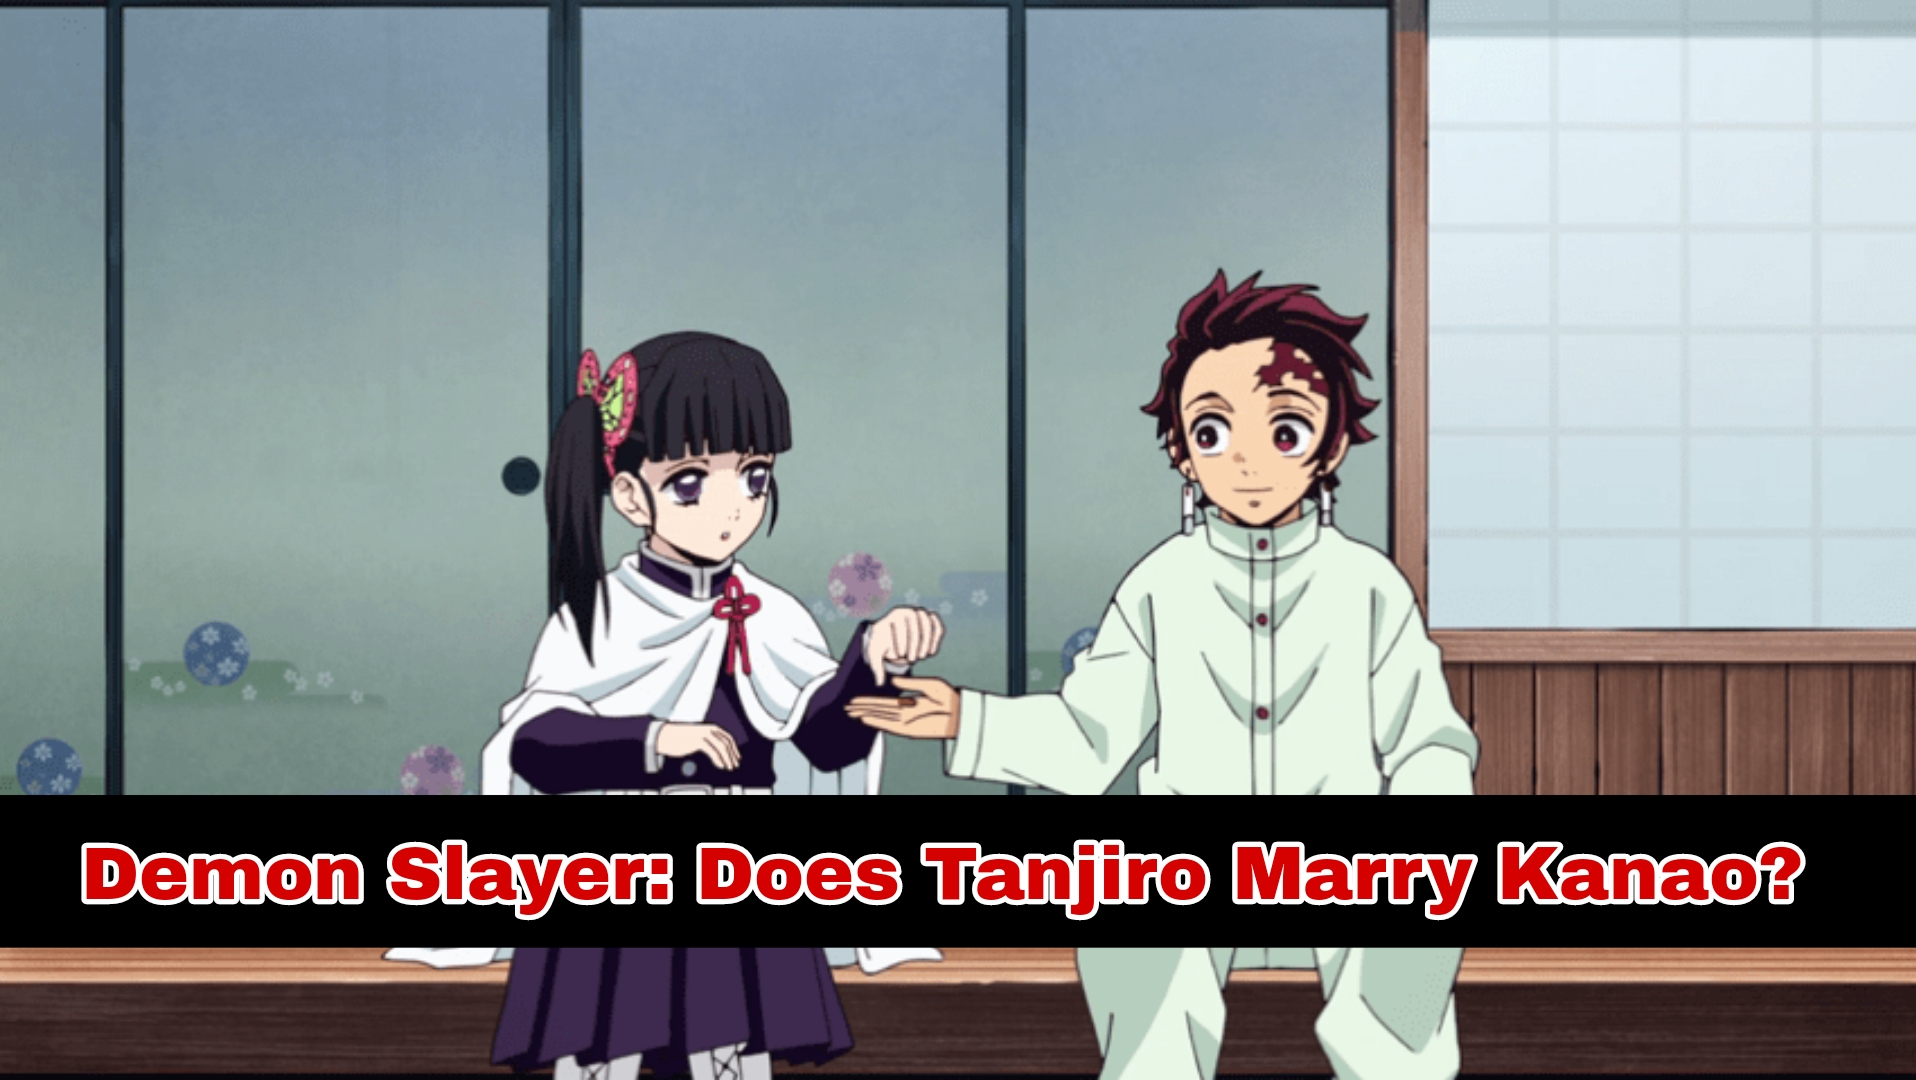 Does tanjiro marry kanao